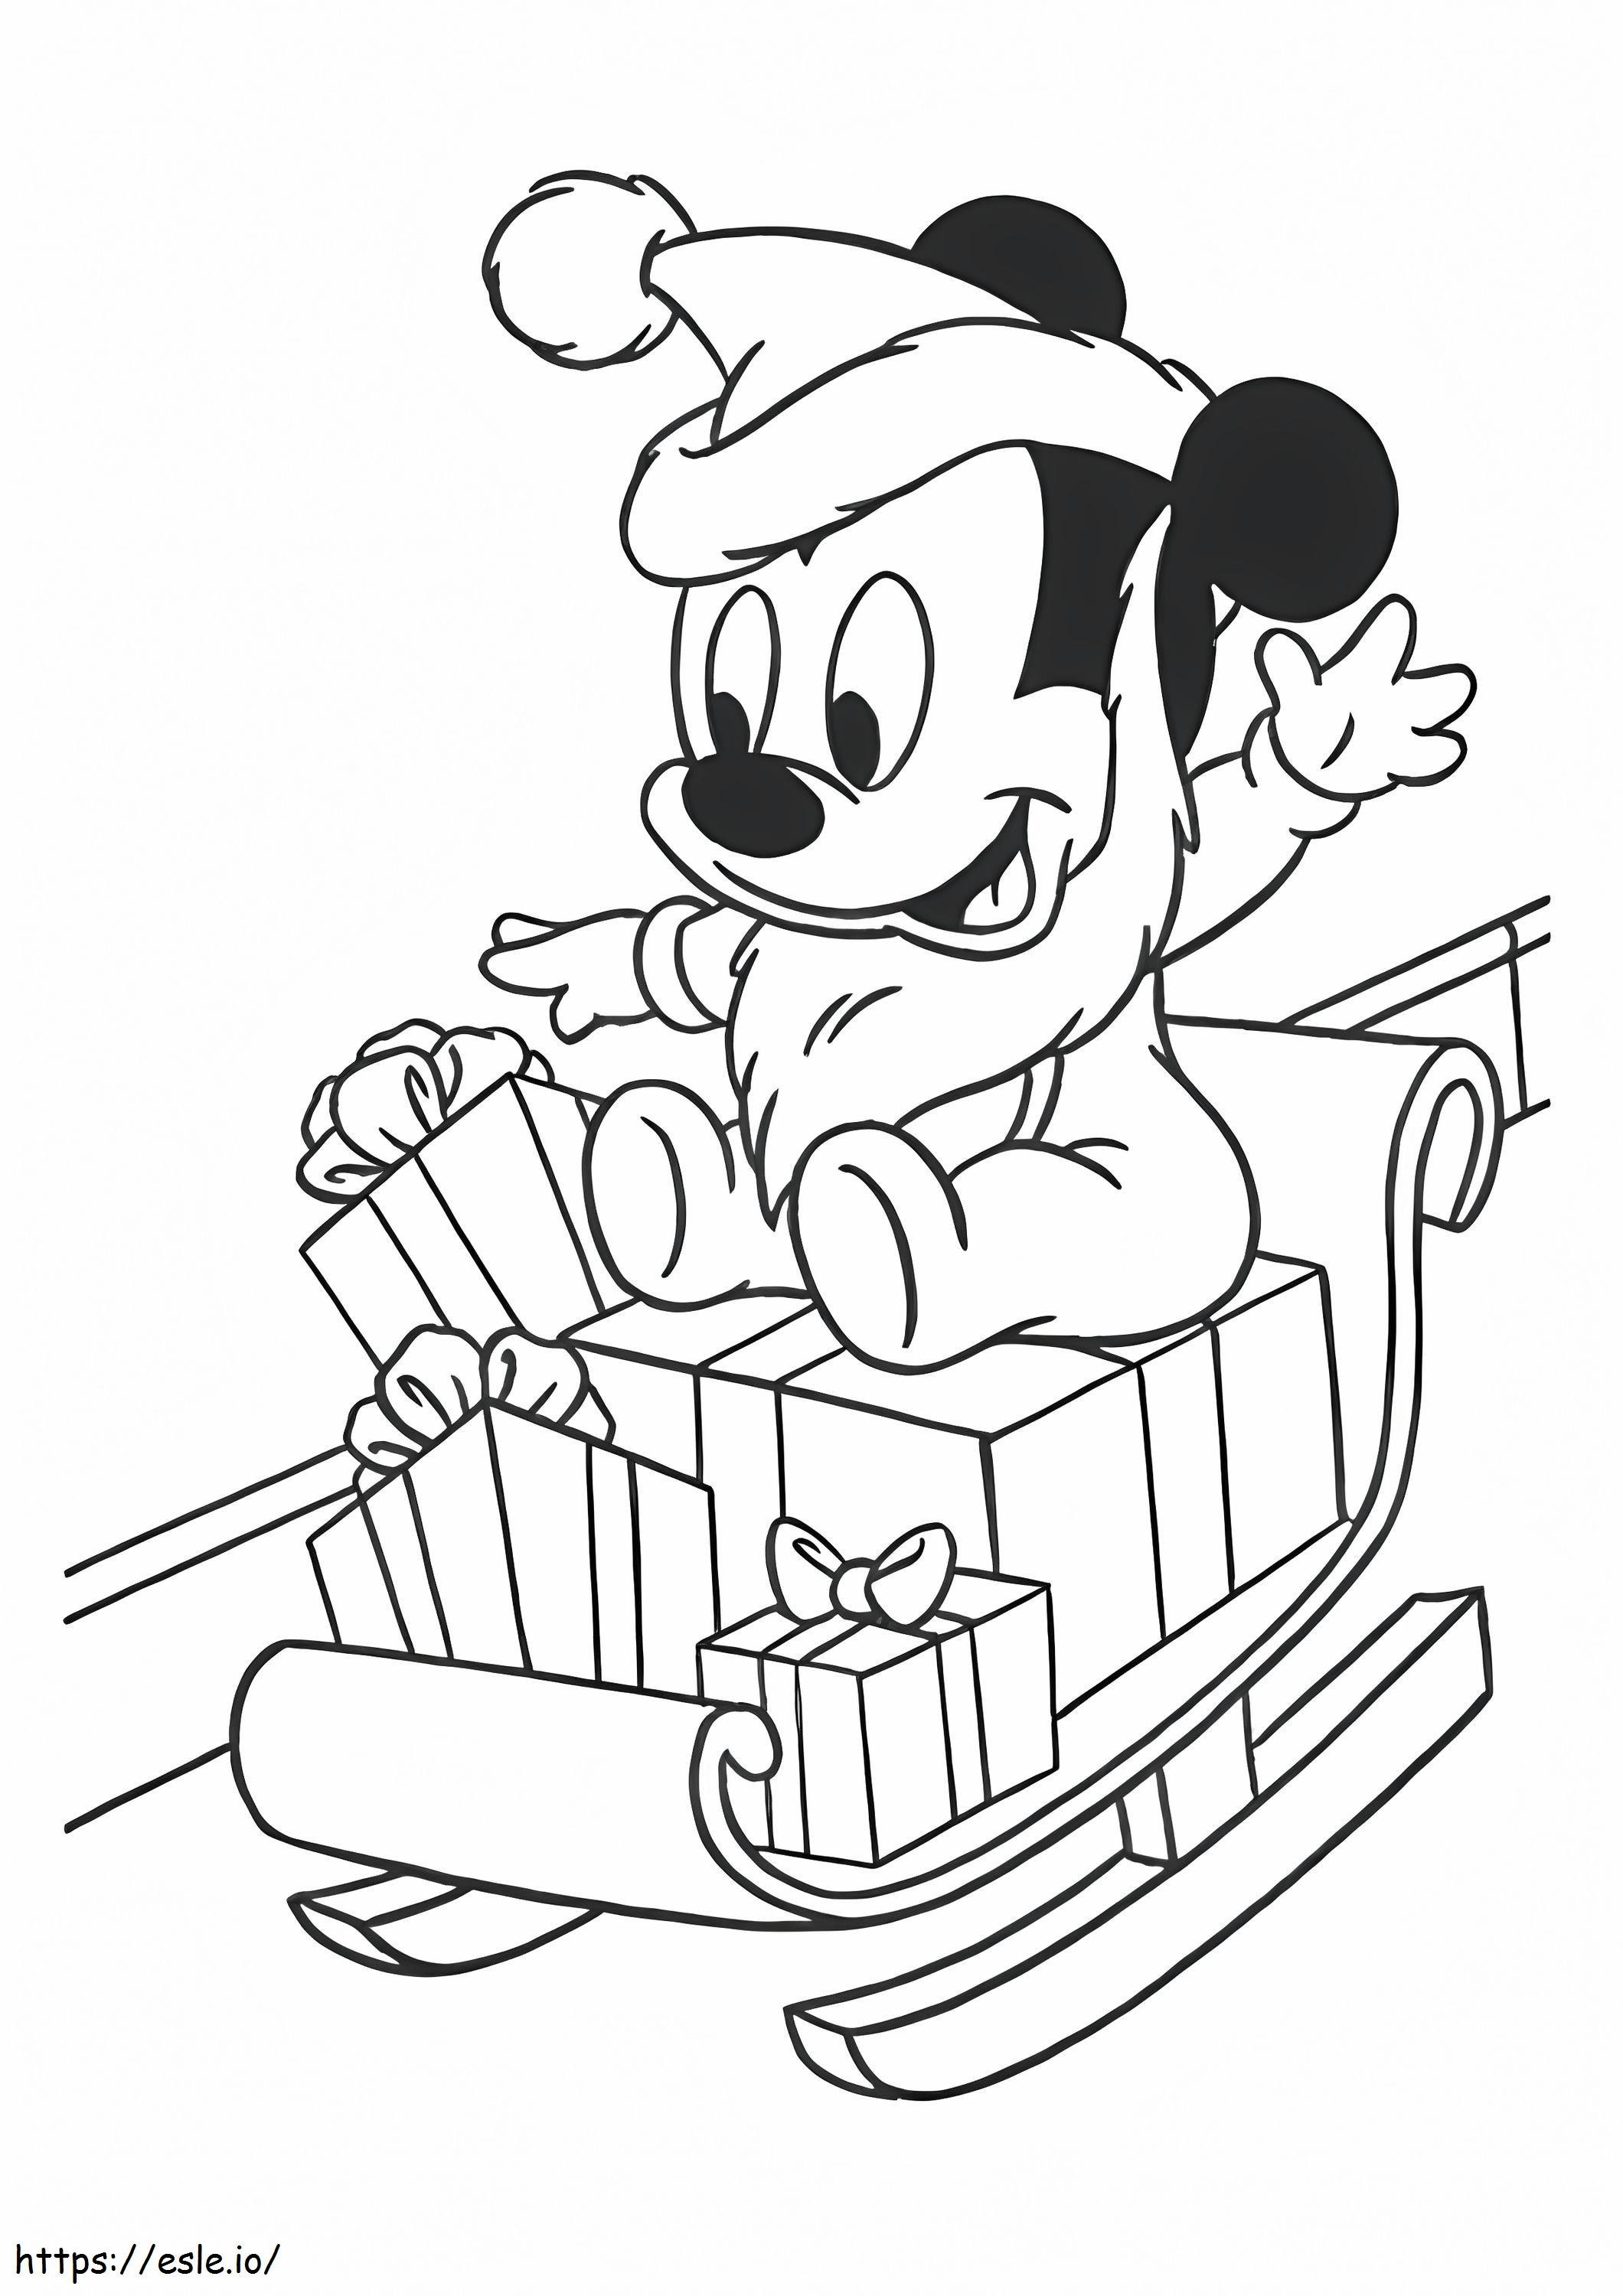 1528099015 De baby Mickey Mouse op de slee, A4 kleurplaat kleurplaat